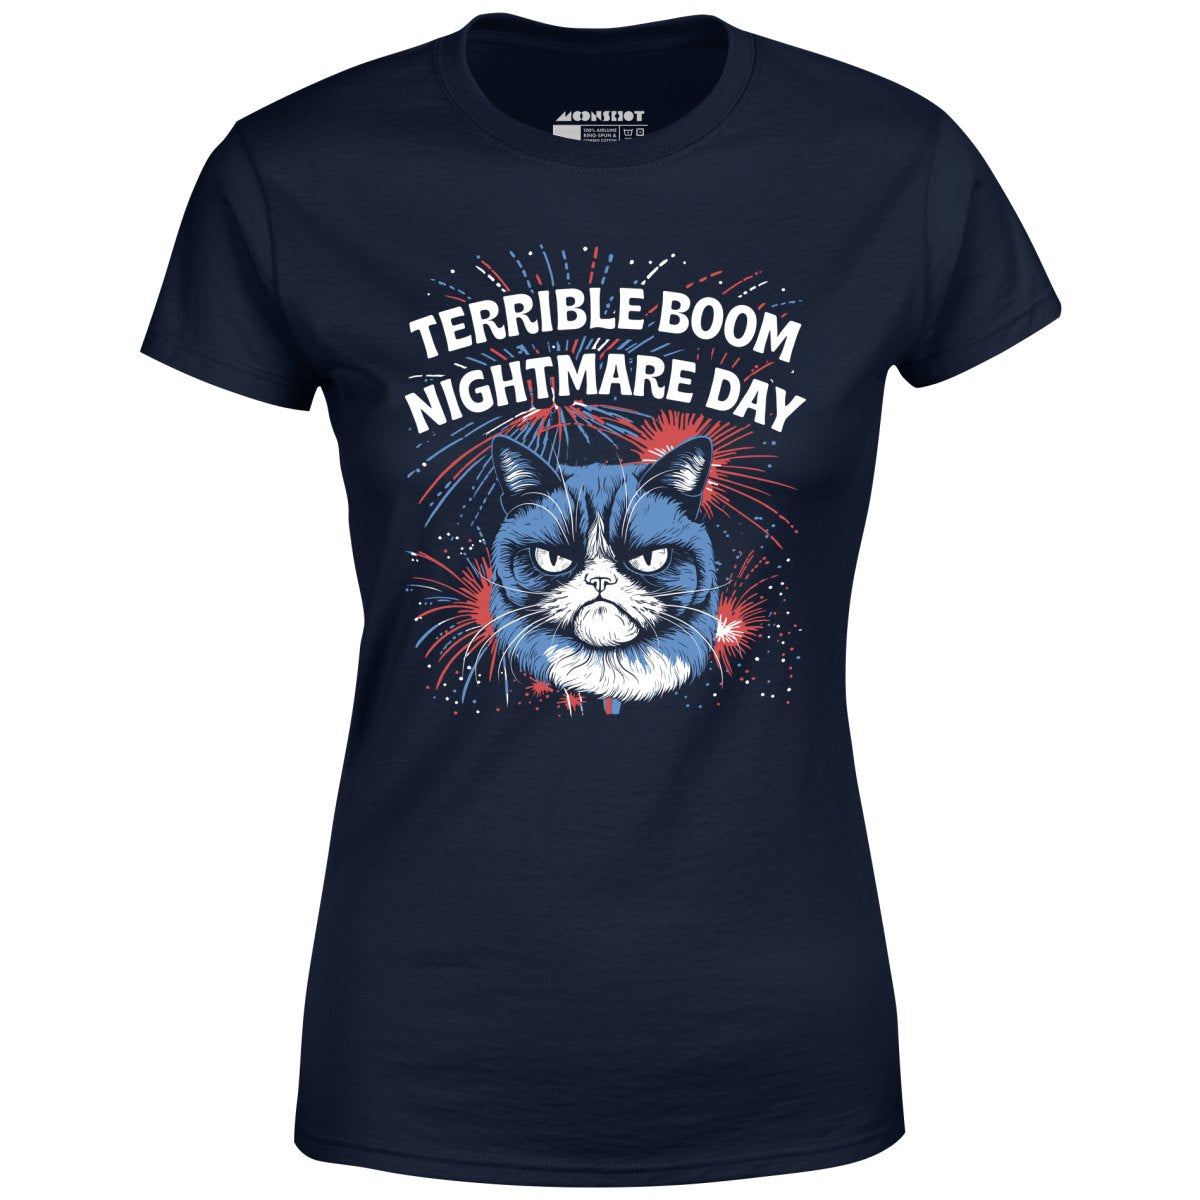 Terrible Boom Nightmare Day - Women's T-Shirt